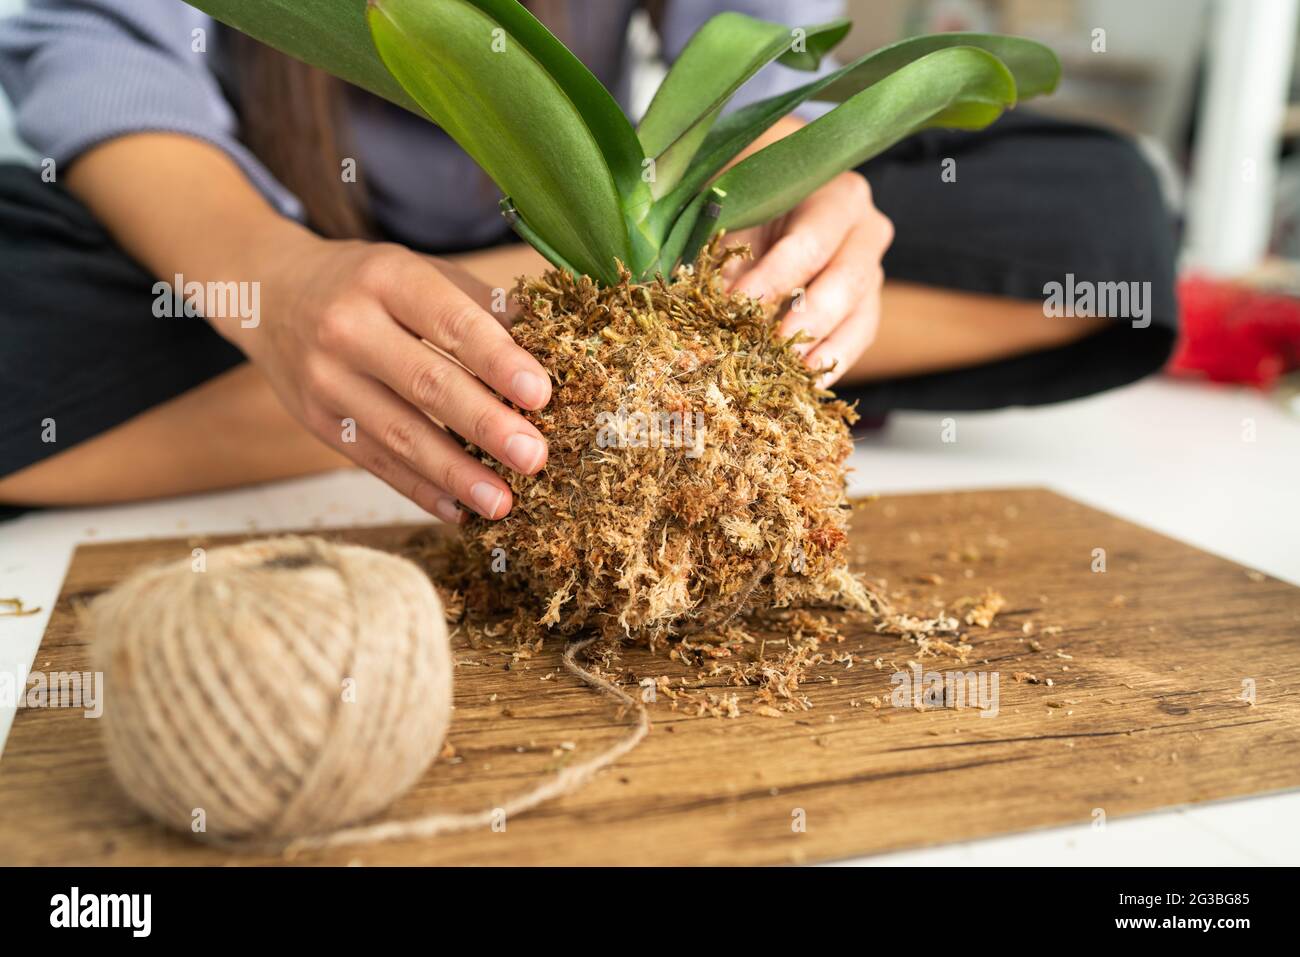 DIY Heimtextilien mit Luft Pflanze hängen japanischen Moos Ball. Frau, die  Orchidee kokedama mit Moos und Seil macht. Gartenarbeit im Innenbereich  Stockfotografie - Alamy